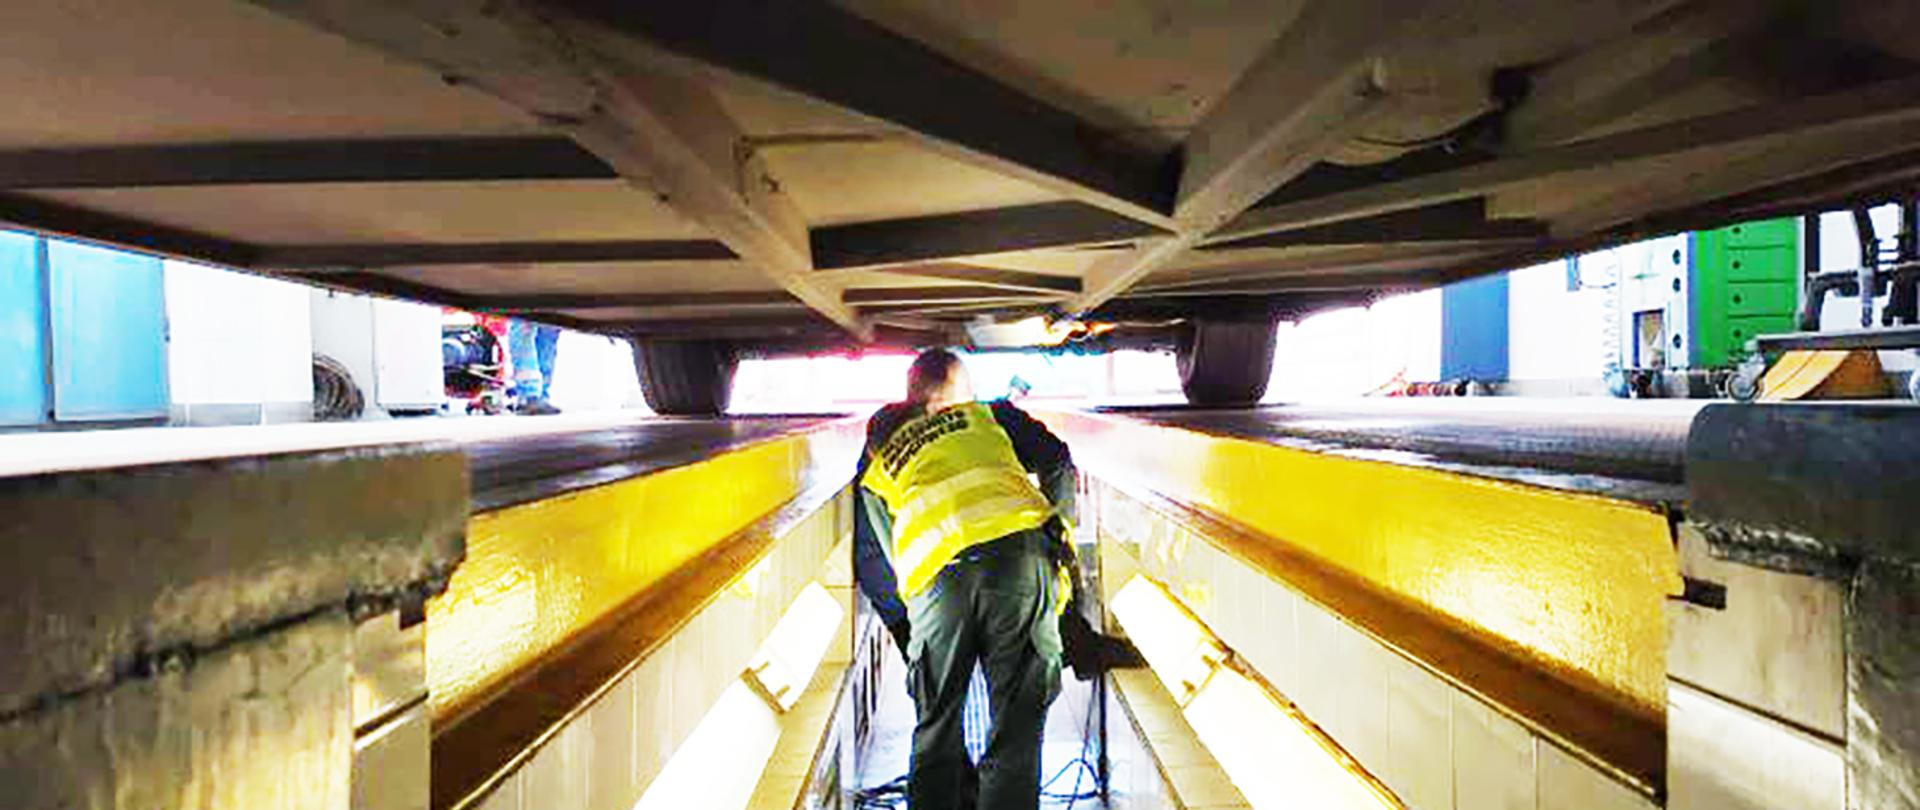 Sprawdzanie stanu podwozia. Inspektor ITD ogląda podwozie autobusu. Kontrola pojazdu w stacji kontroli pojazdów.